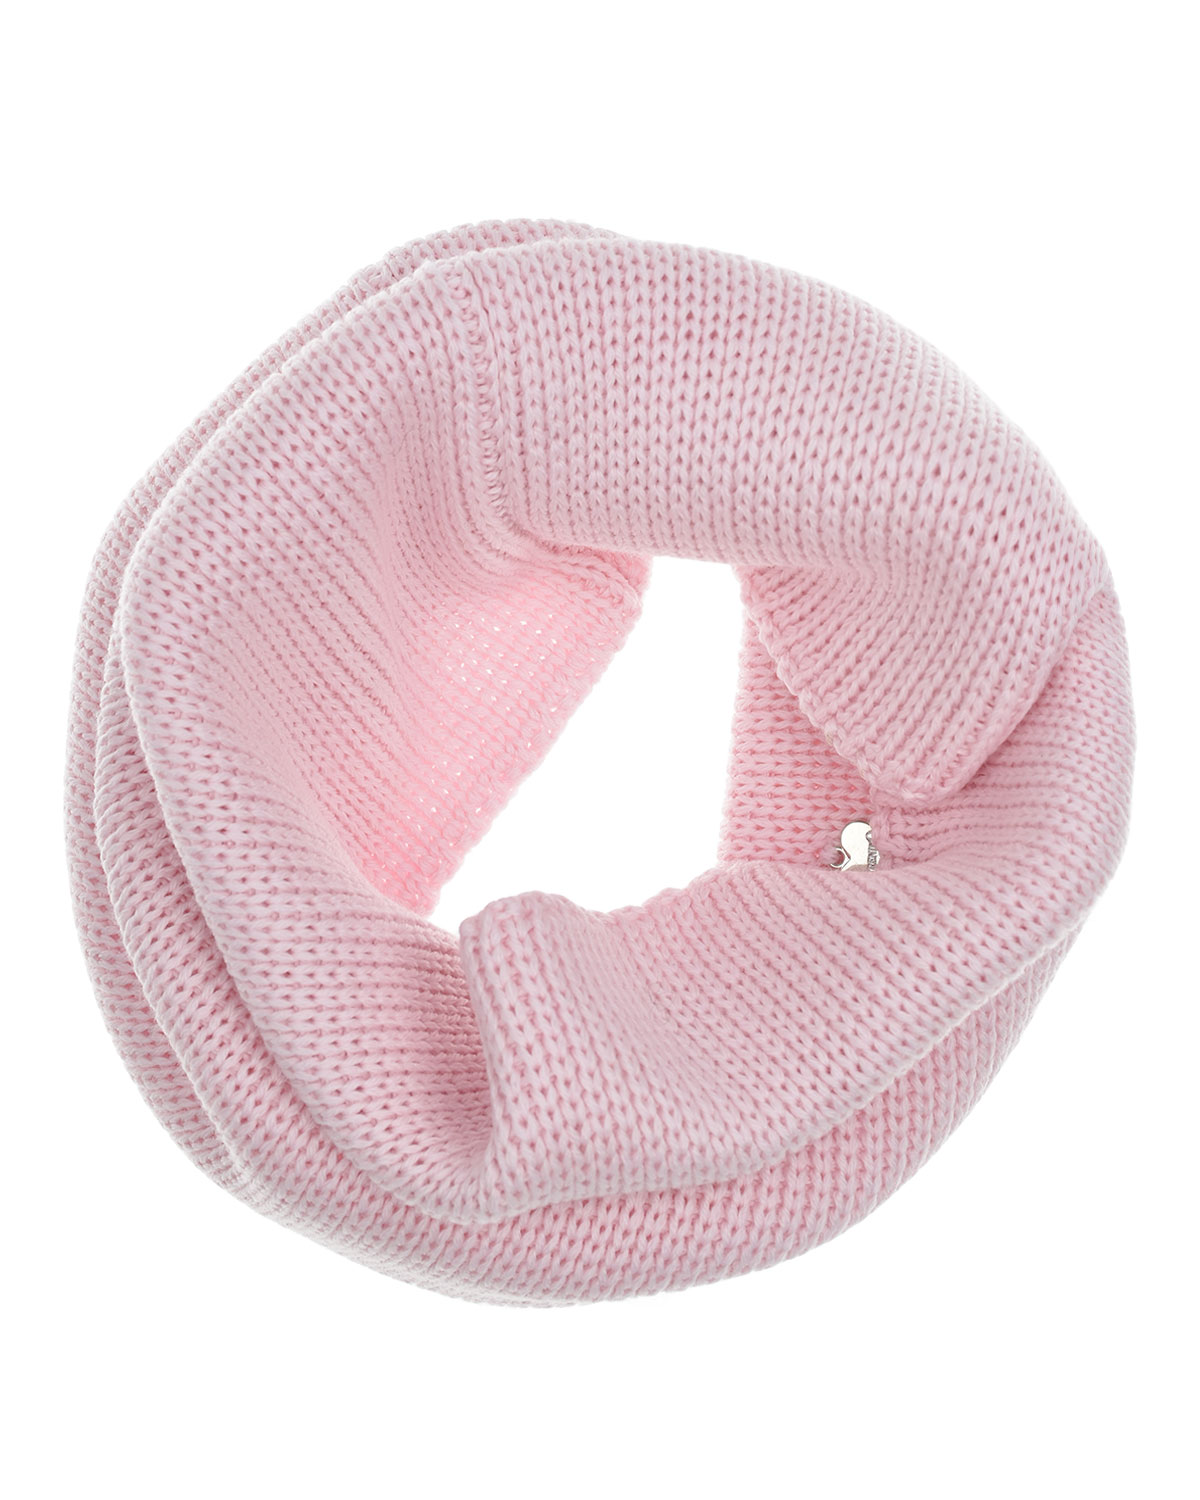 Шерстяной шарф-ворот розового цвета, 24х30 см Il Trenino детский, размер unica - фото 3